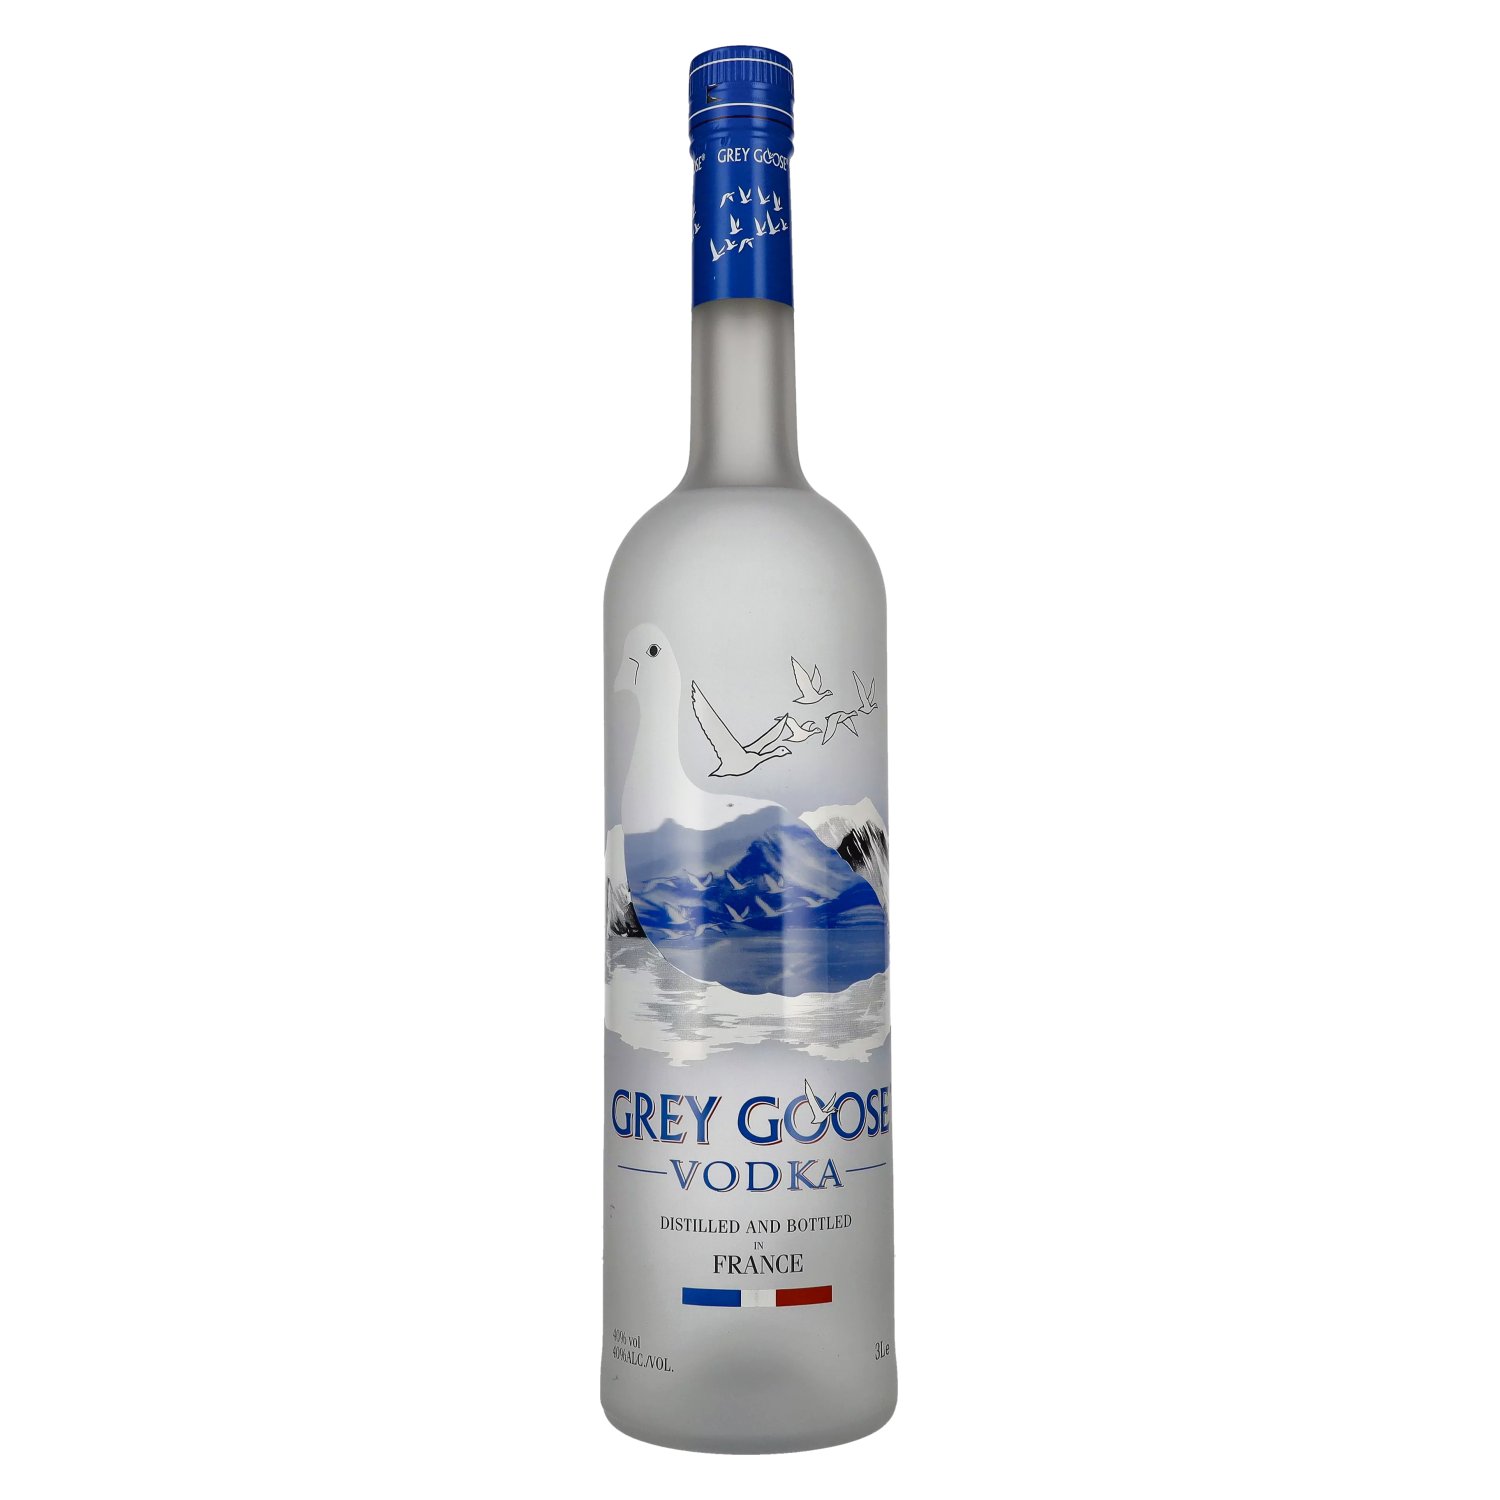 Grey Goose Vodka 40% Vol. 3l - delicando